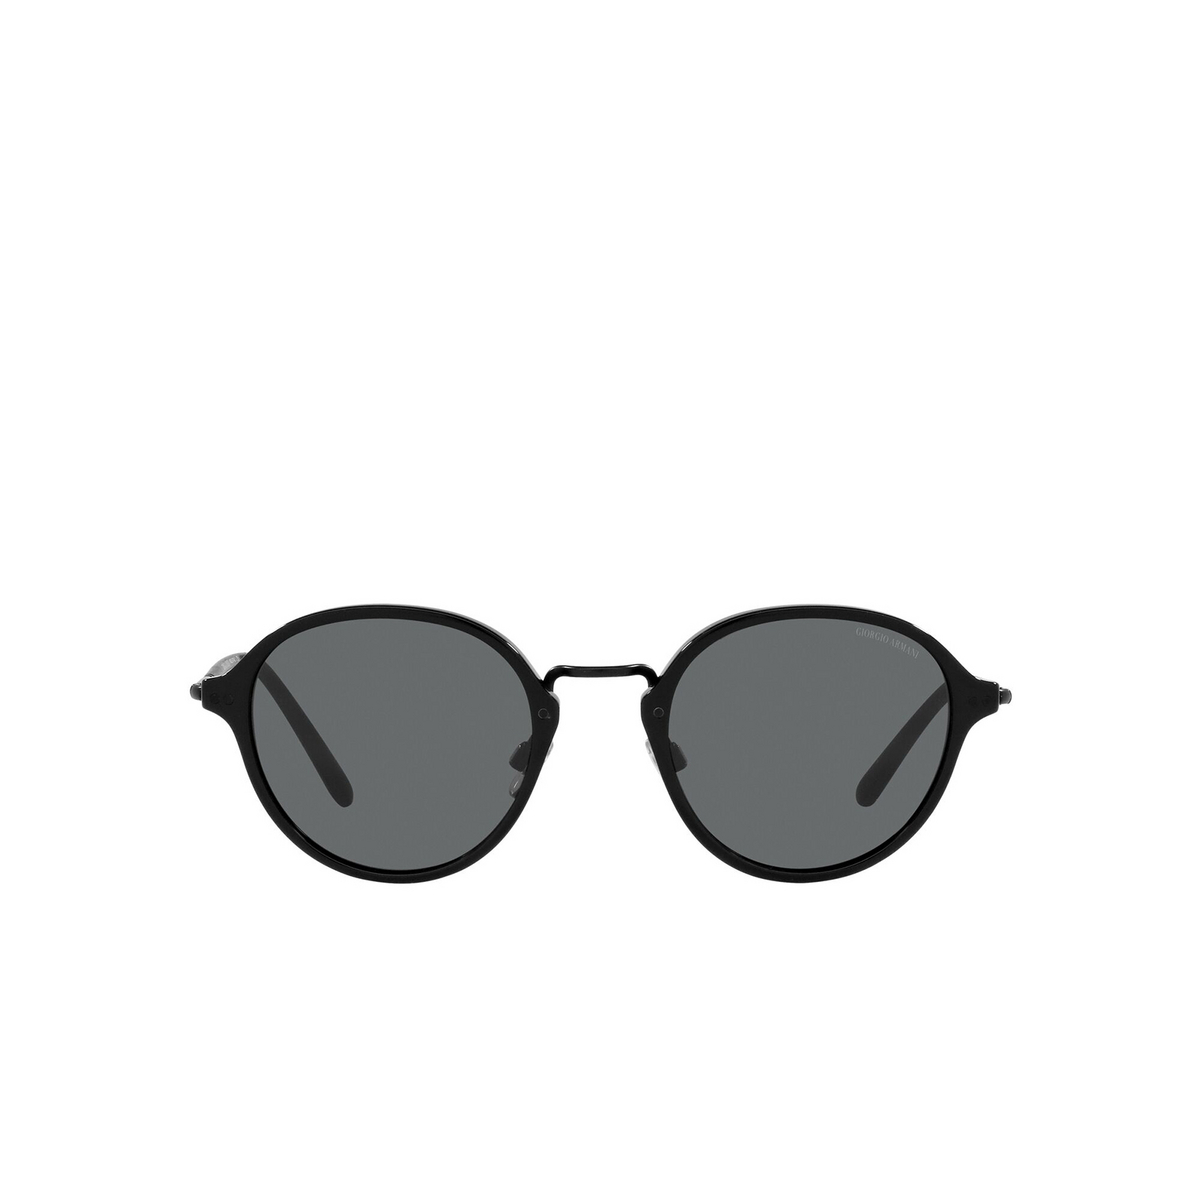 Giorgio Armani® Square Sunglasses: AR8139 color Matte Black 5042B1 - front view.